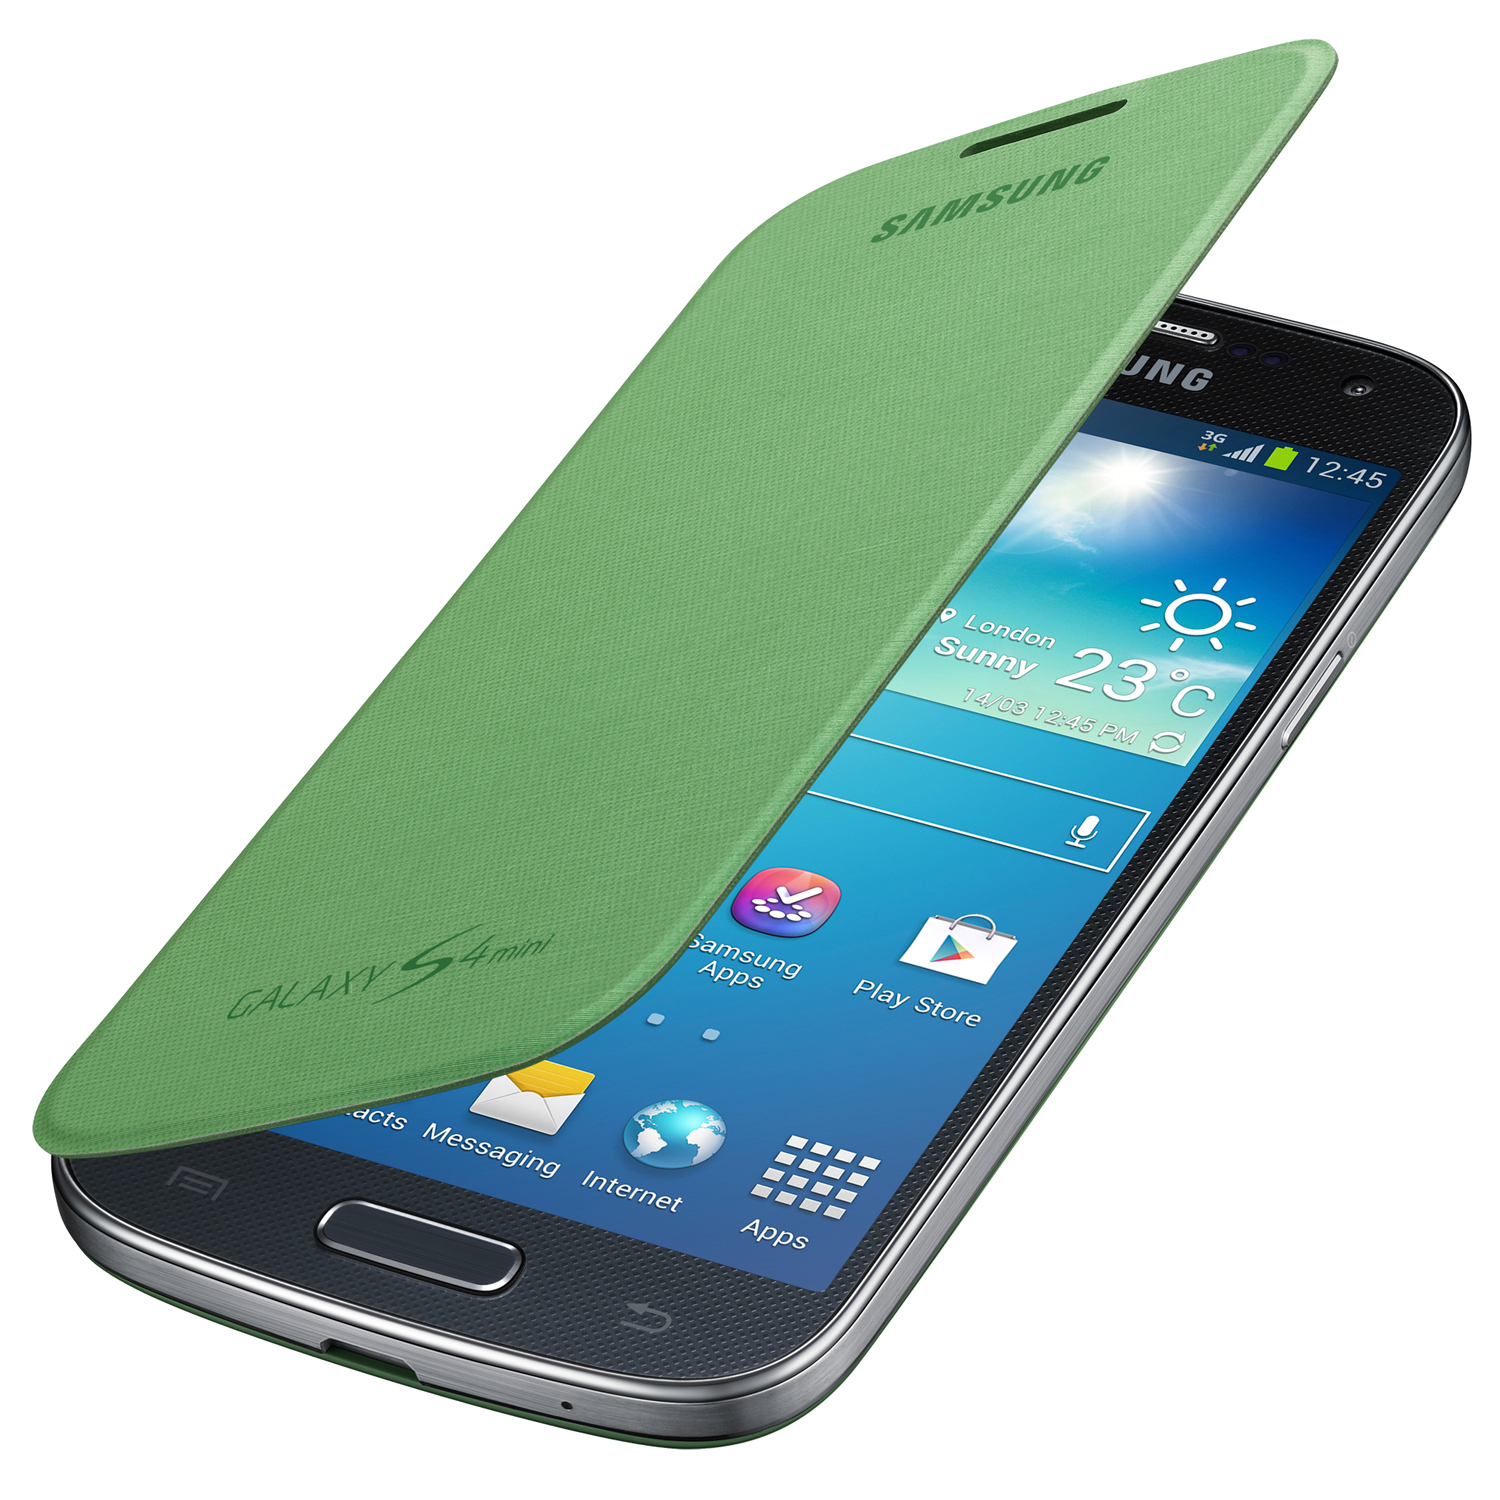 Телефоны самсунг цены спб. Самсунг галакси s4. Samsung Galaxy s4 Mini. Samsung Galaxy 4 Mini. Samsung Galaxy s4 Mini зеленый.